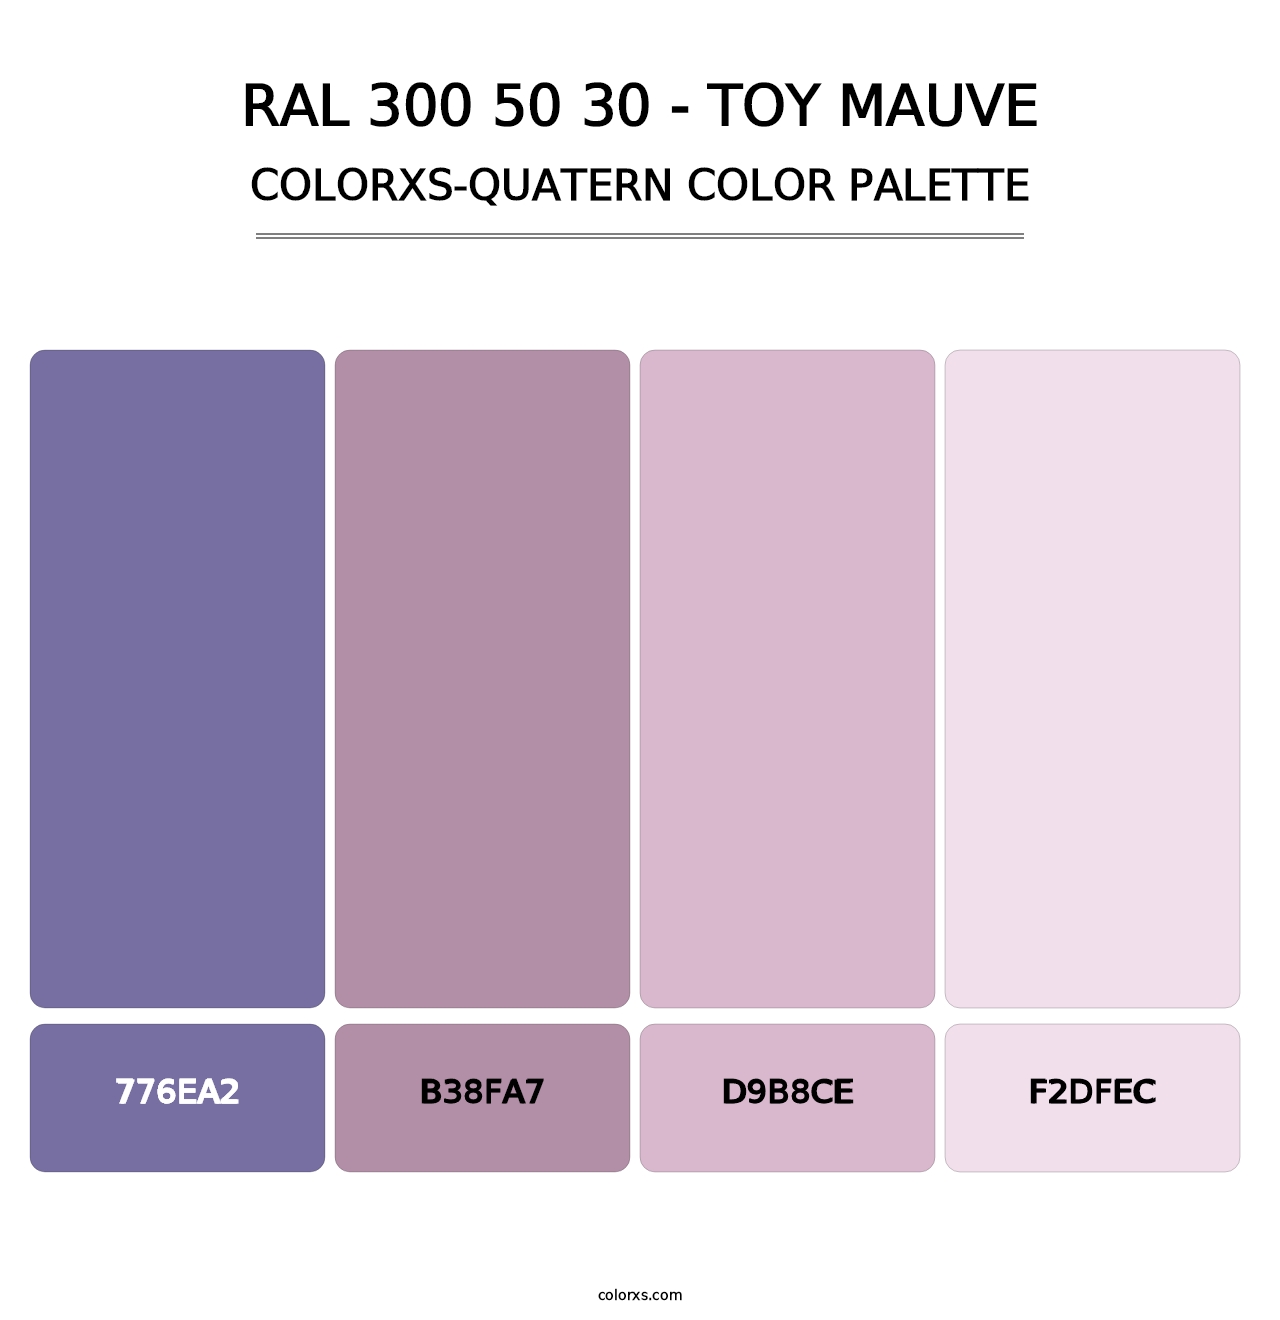 RAL 300 50 30 - Toy Mauve - Colorxs Quatern Palette